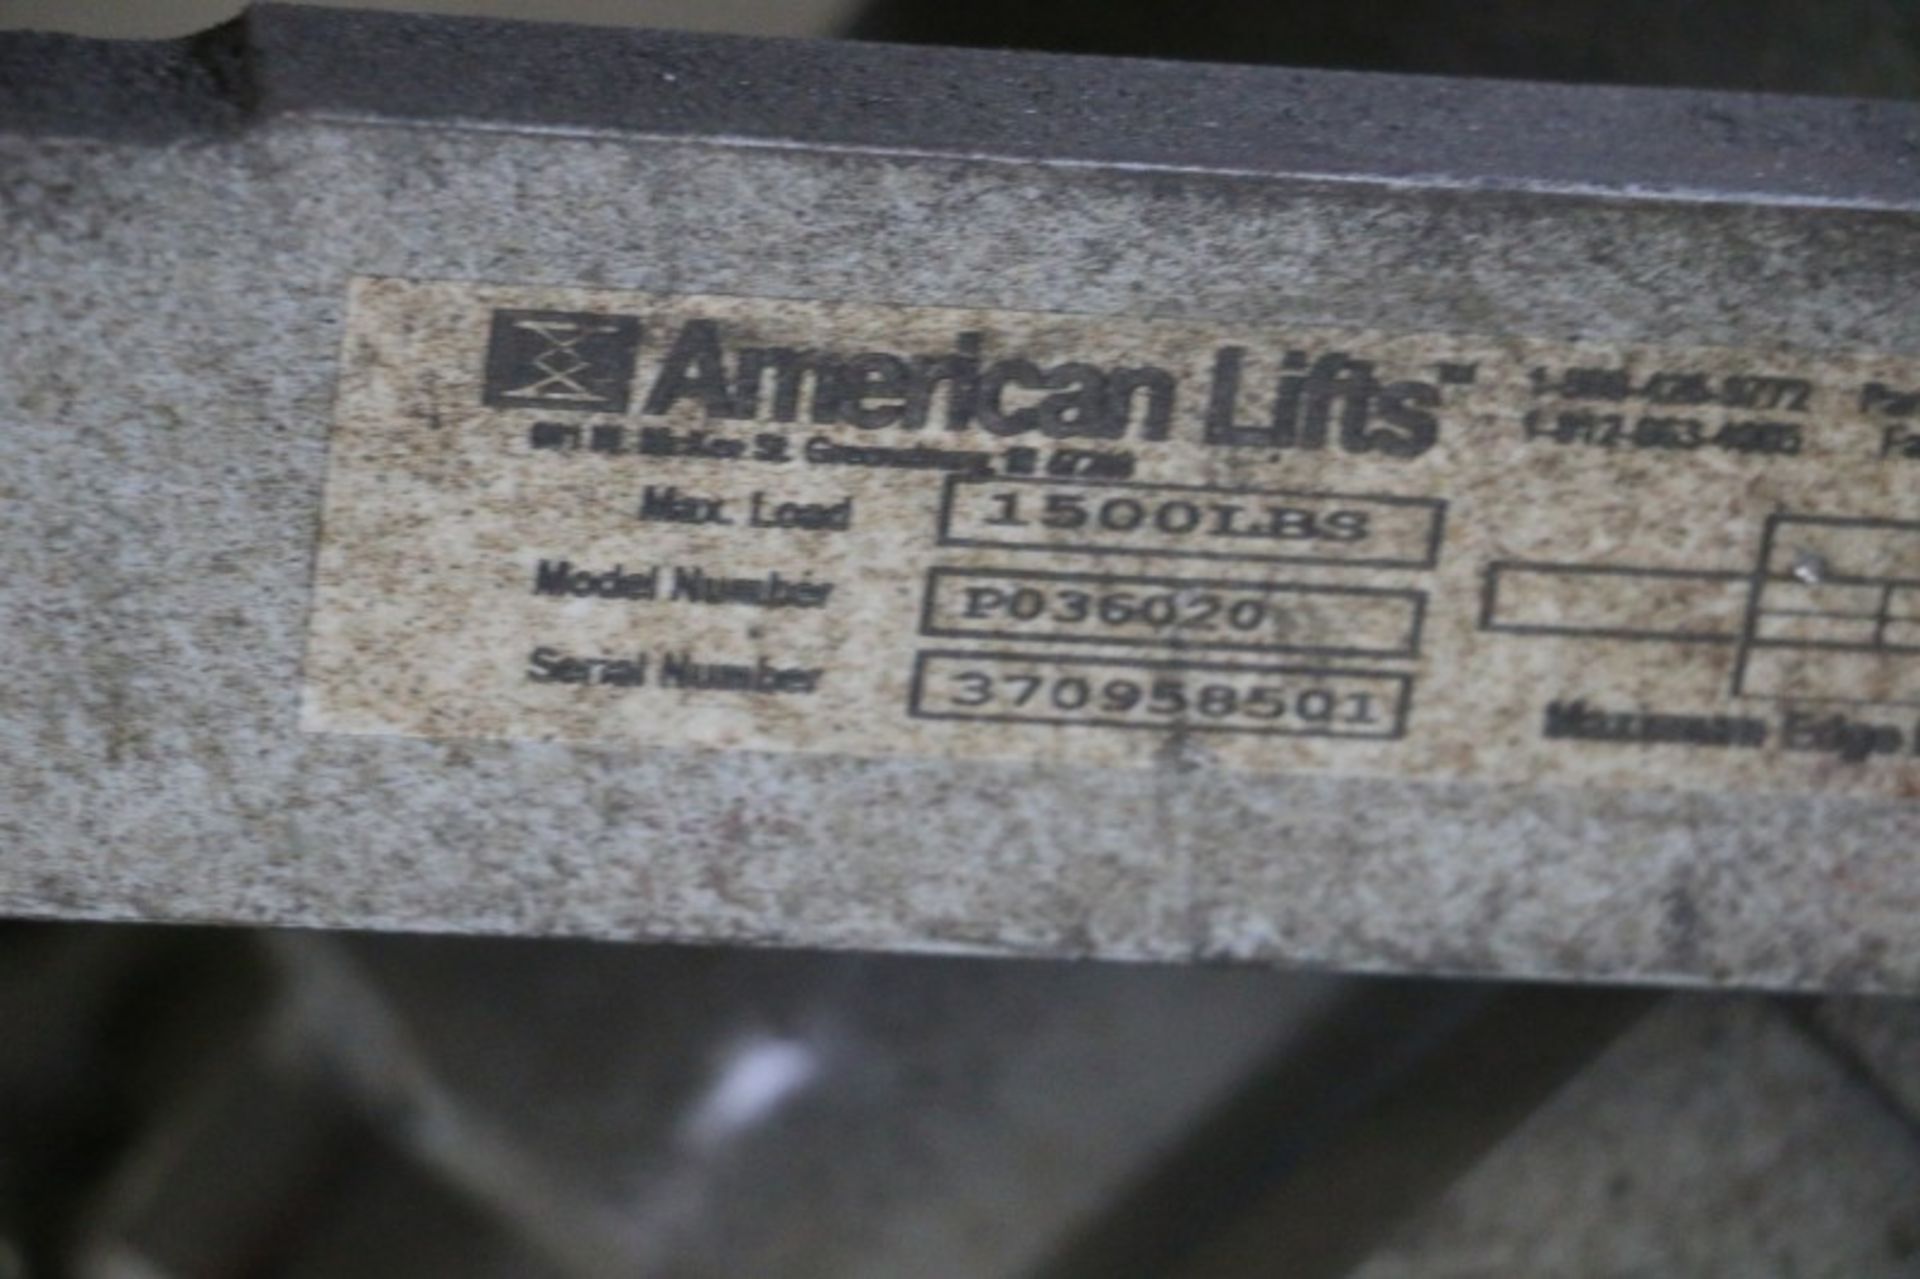 American Lifts P036020 1,500lb Cap Scissor Lift Table S/N 370958501 - Image 5 of 5